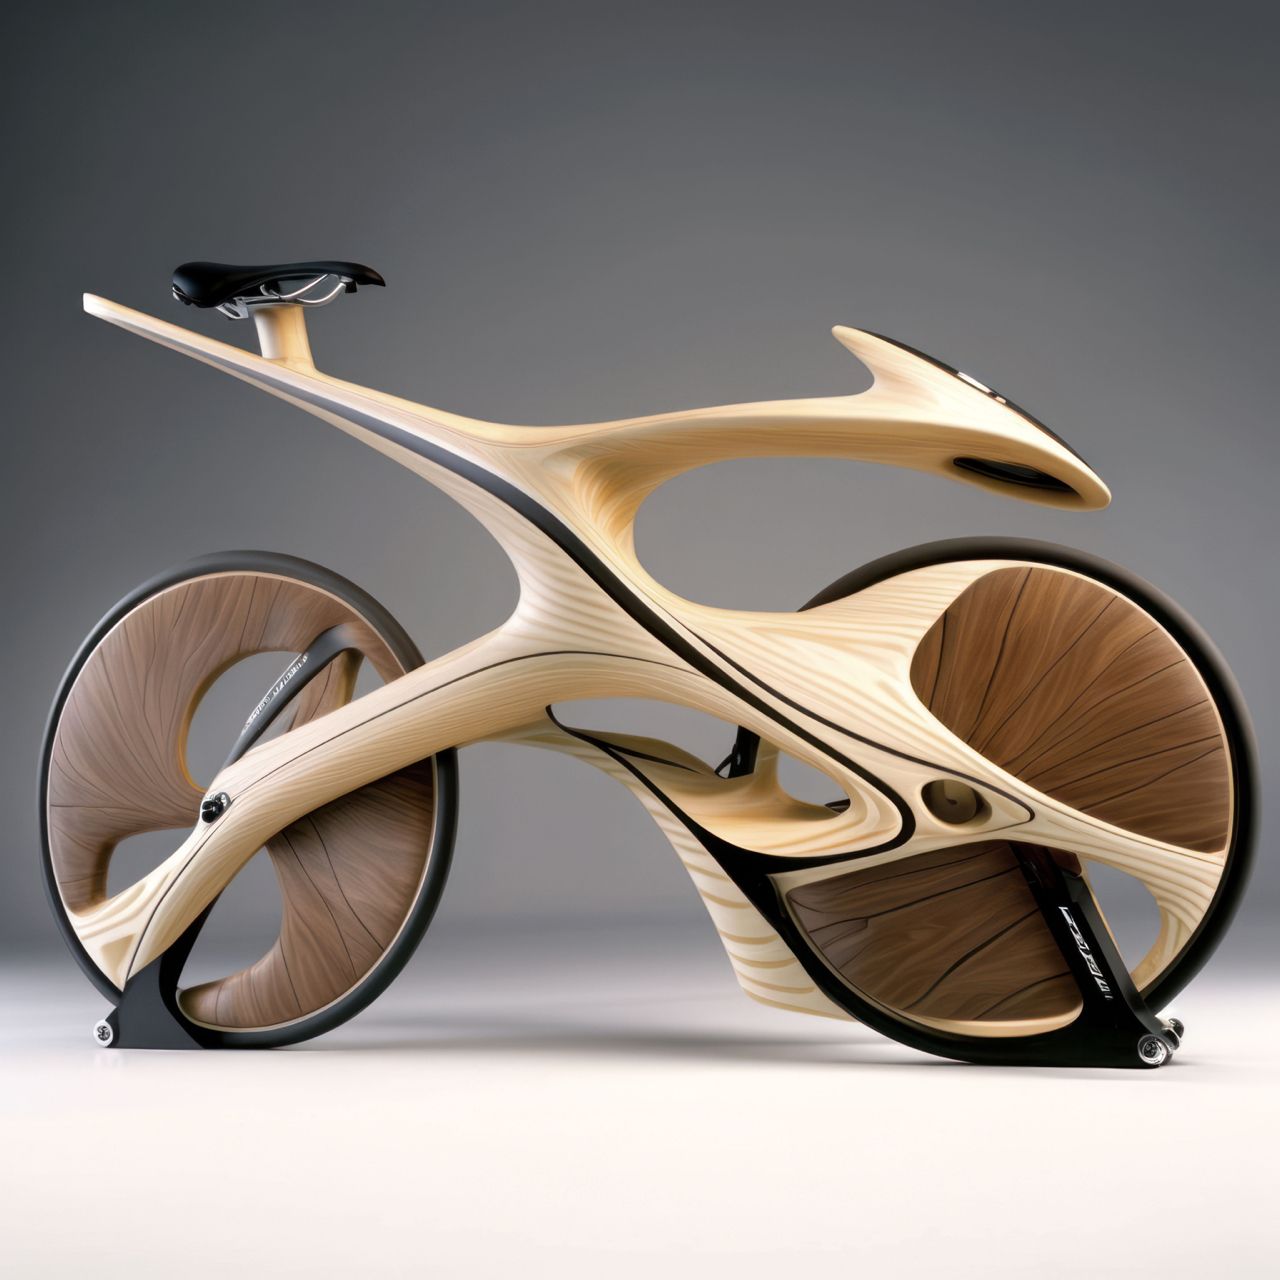 Bike Futurista – Geometria, aerodinâmica e design arrojado. Essa é a Bike do futuro